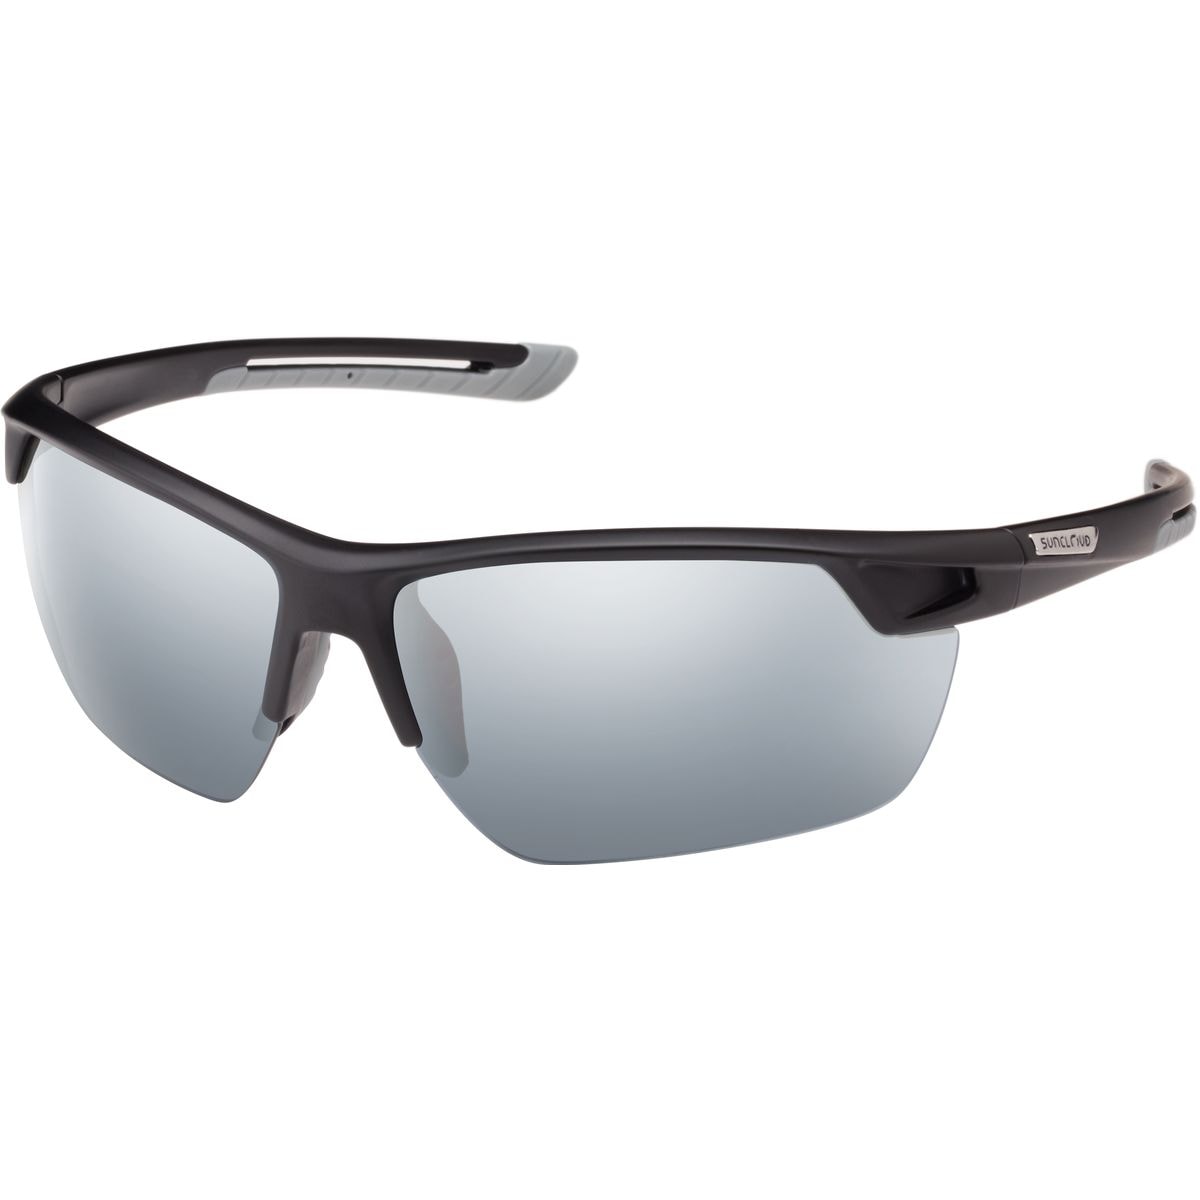 Поляризованные солнцезащитные очки contender Suncloud Polarized Optics, цвет matte black/silver mirror очки солнцезащитные stylemark polarized l2480d